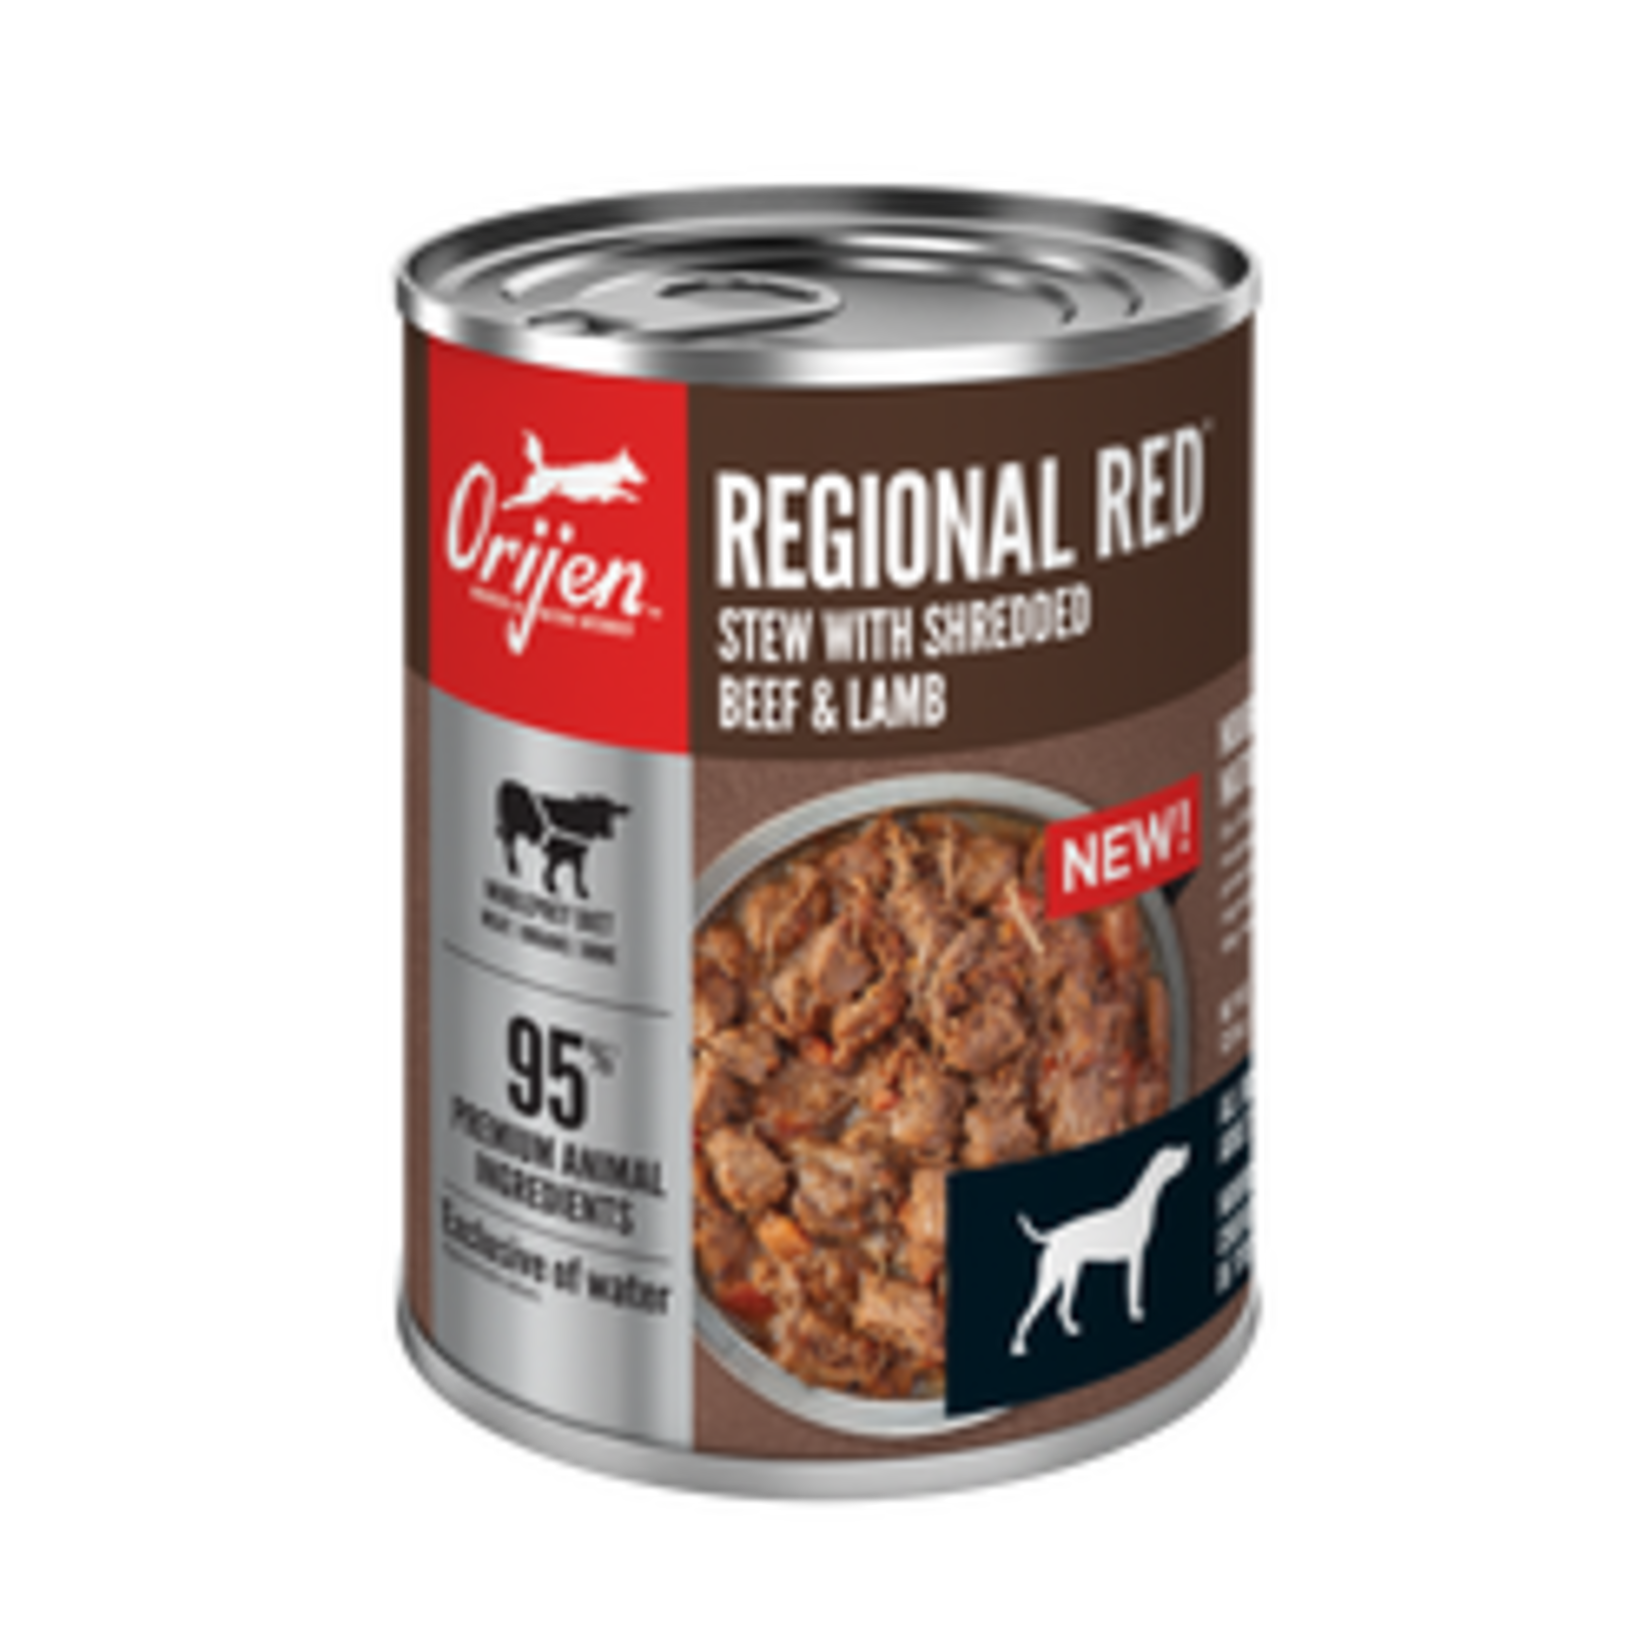 Orijen Orijen Canned Regional Red Stew with Shredded Beef & Lamb for Dogs 363g